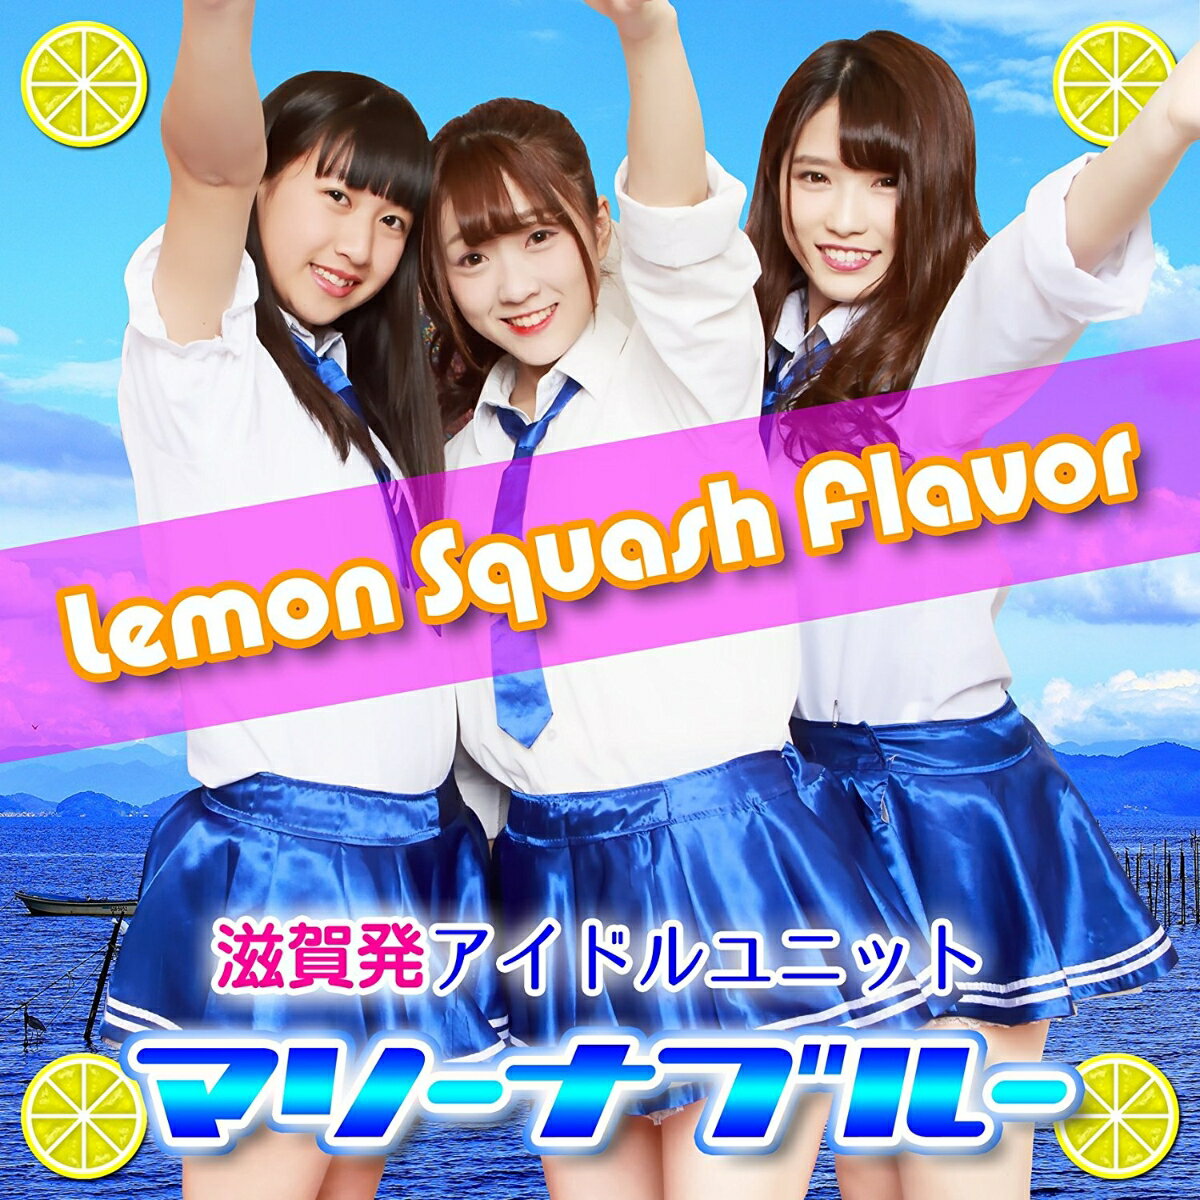 Lemon Squash Flavor [ マリーナブルー ]